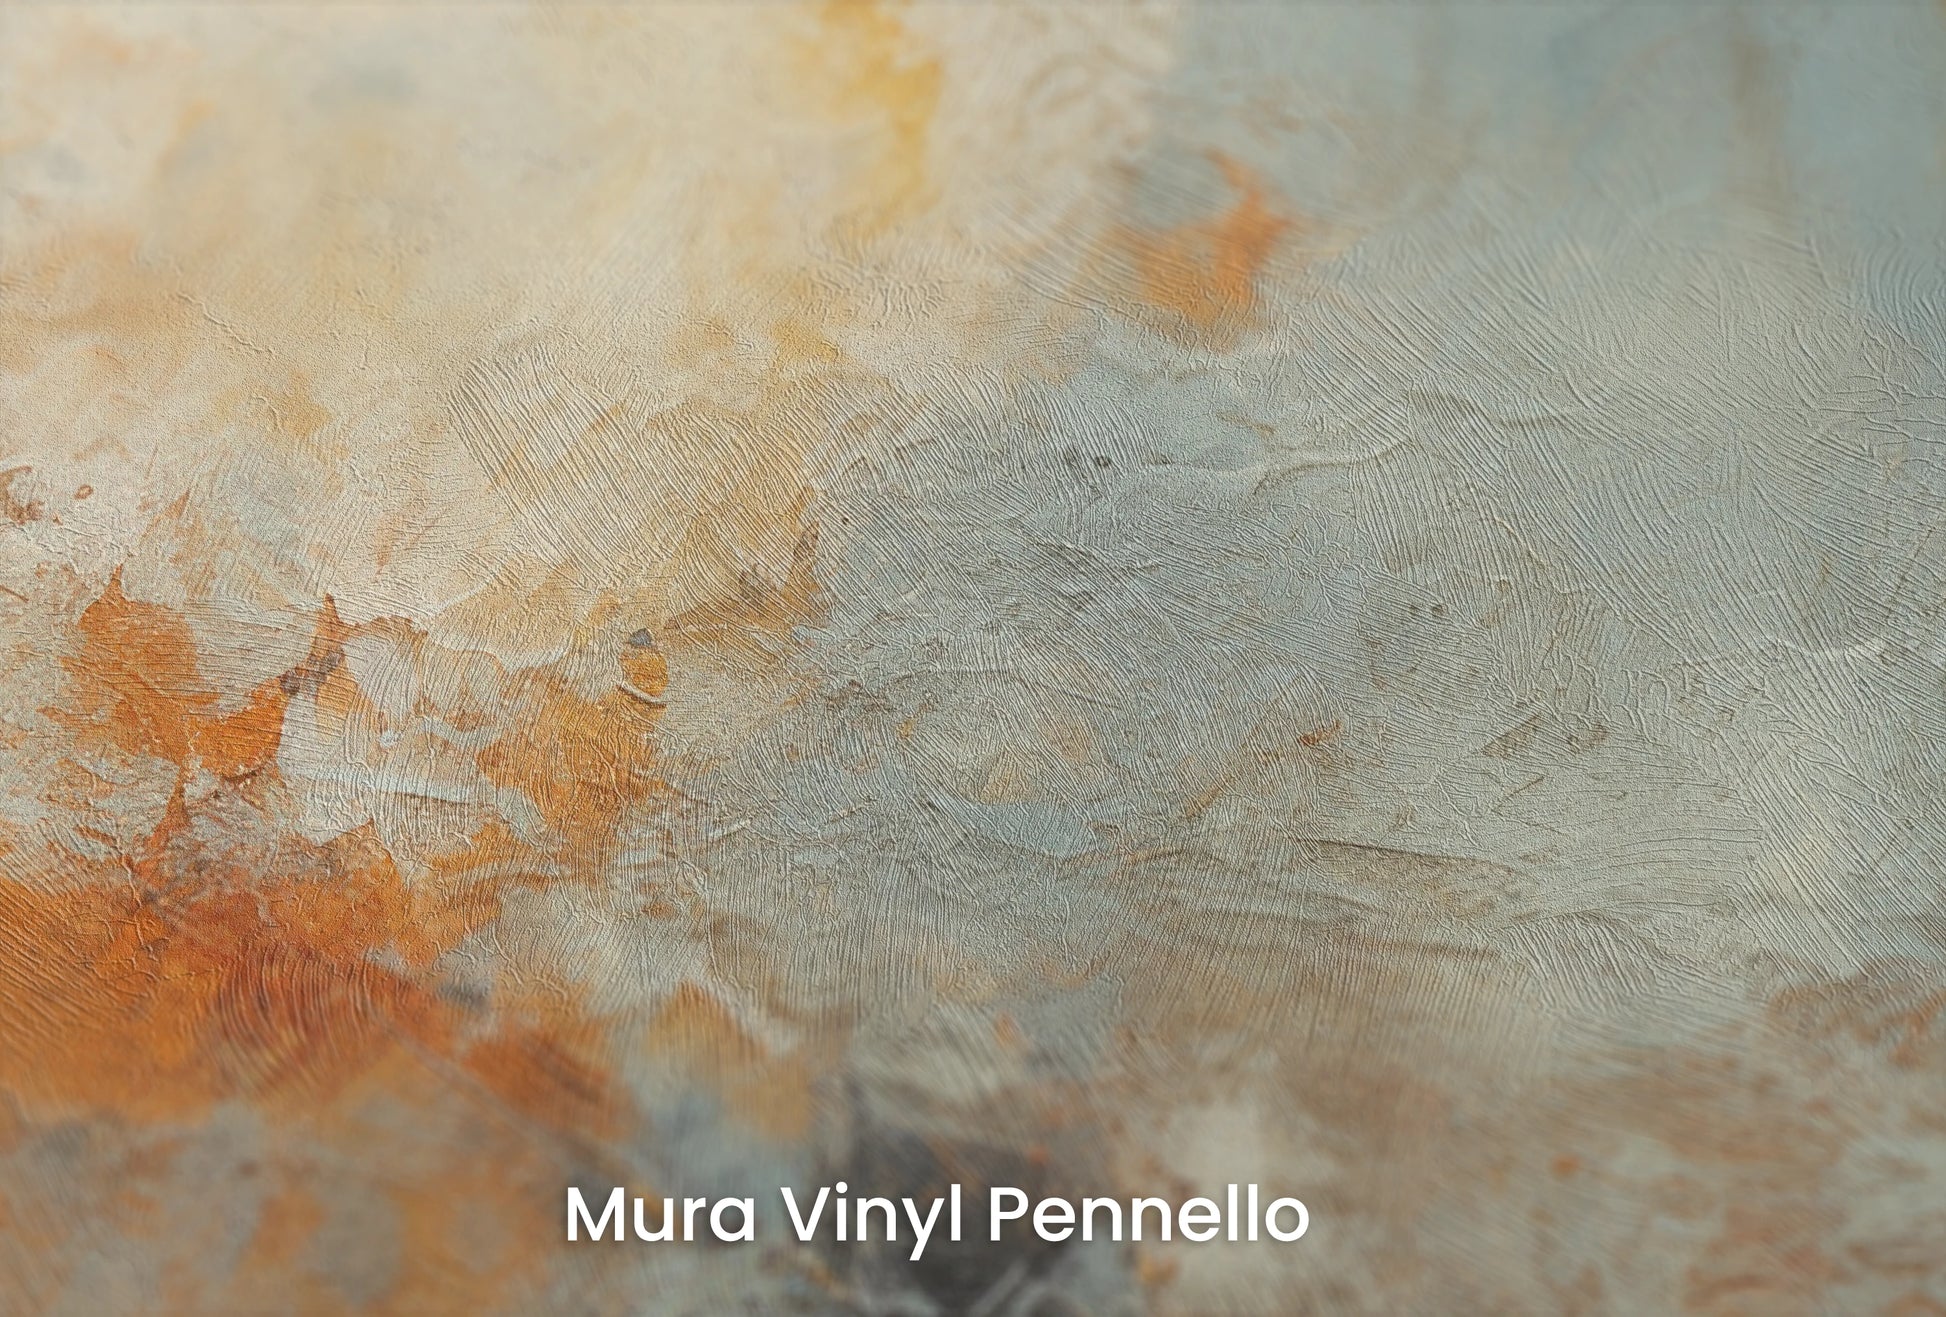 Zbliżenie na artystyczną fototapetę o nazwie Moon's Texture na podłożu Mura Vinyl Pennello - faktura pociągnięć pędzla malarskiego.